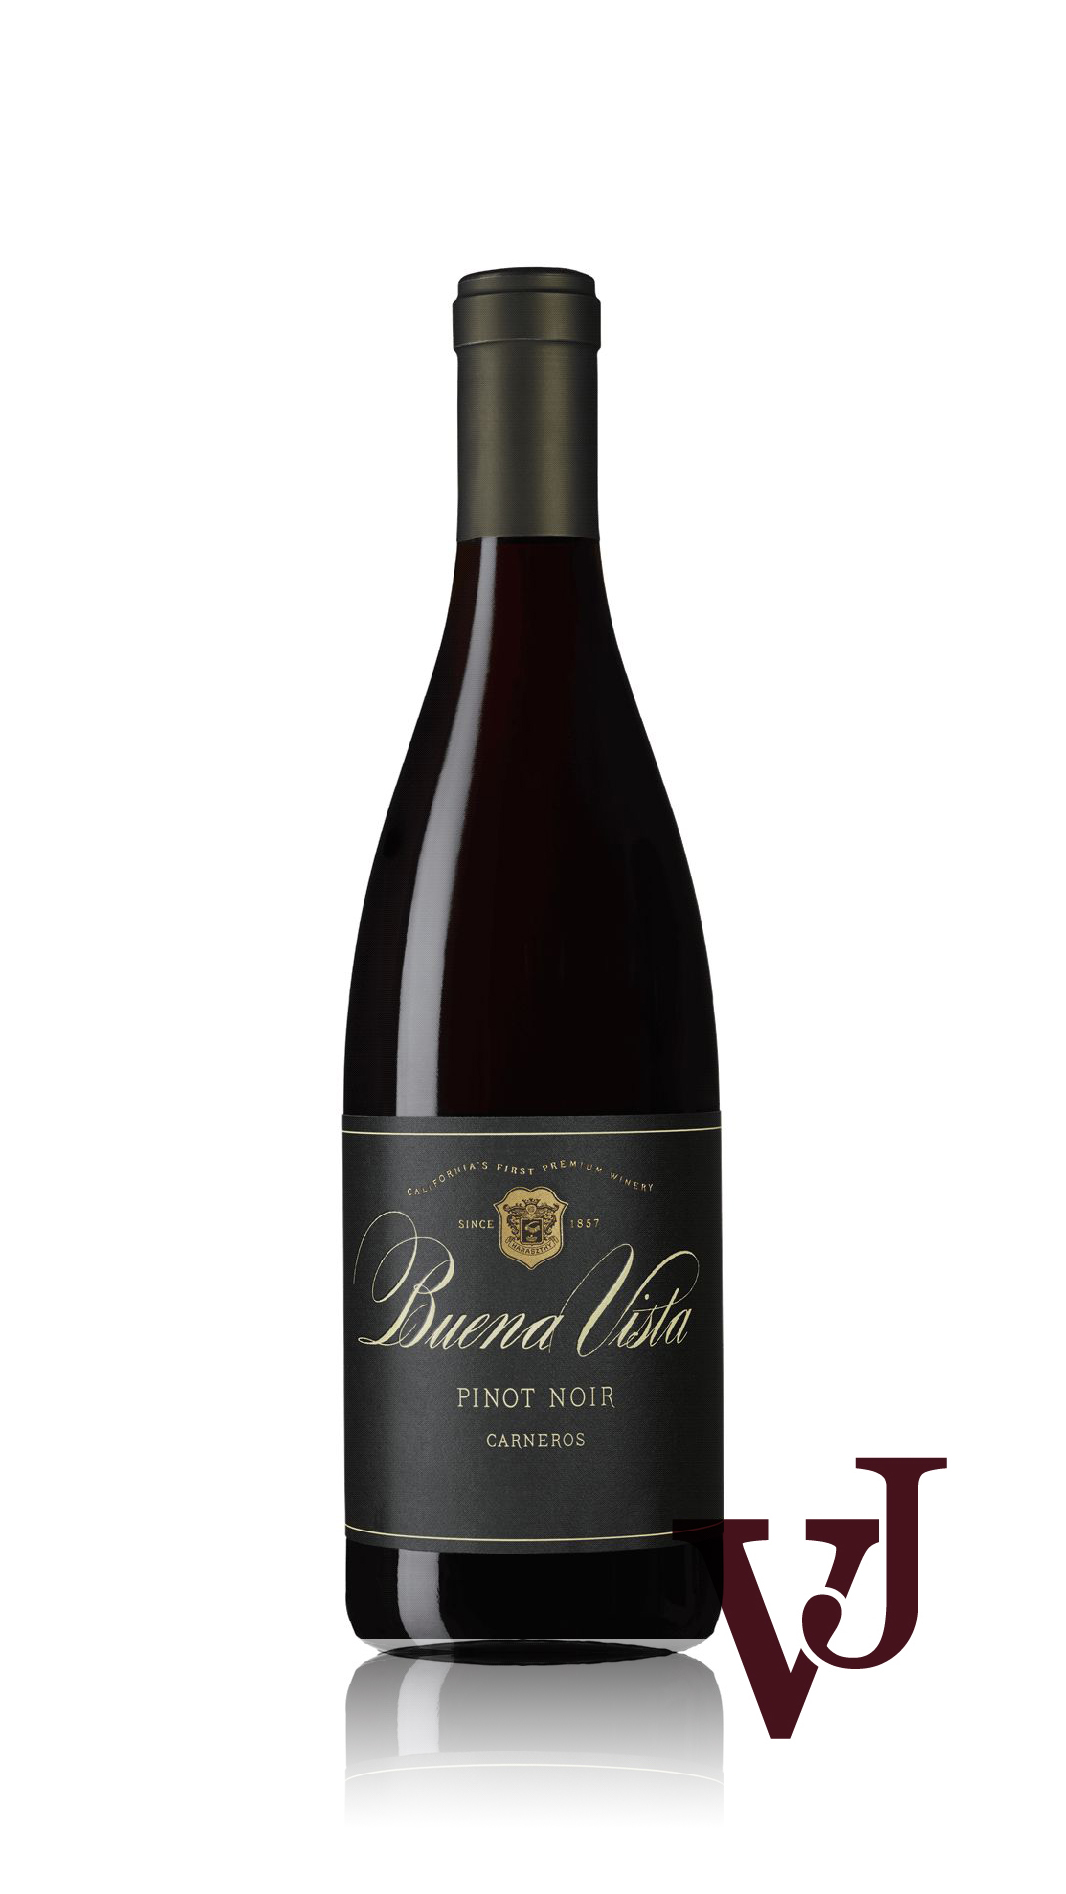 Rött Vin - Buena Vista Carneros Pinot Noir artikel nummer 638001 från producenten Buena Vista Winery från området USA